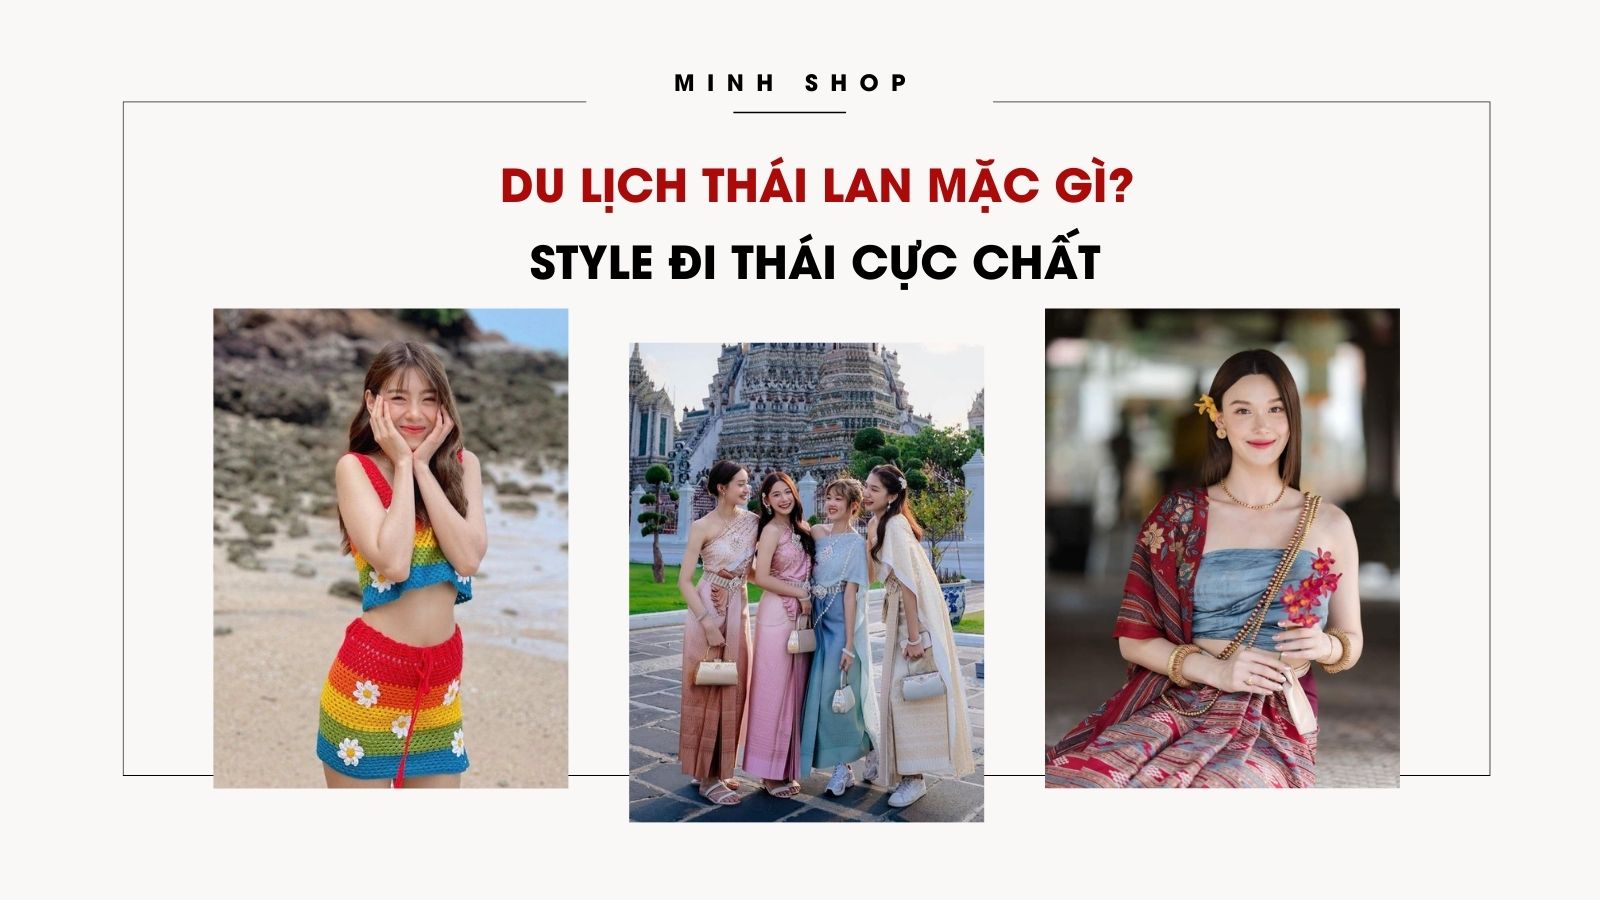 /bai-viet/du-lich-thai-lan-mac-gi-style-di-thai-cuc-chat/507